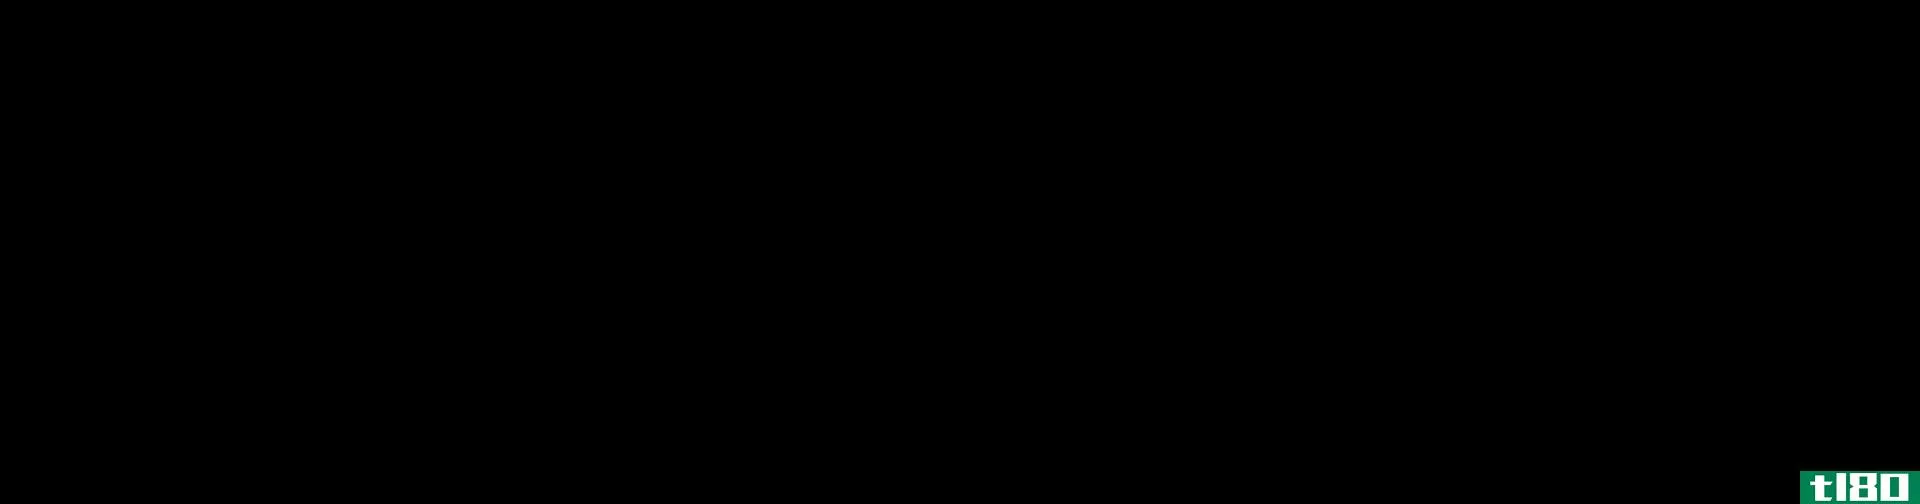 1丙醇(1 propanol)和2丙醇(2 propanol)的区别